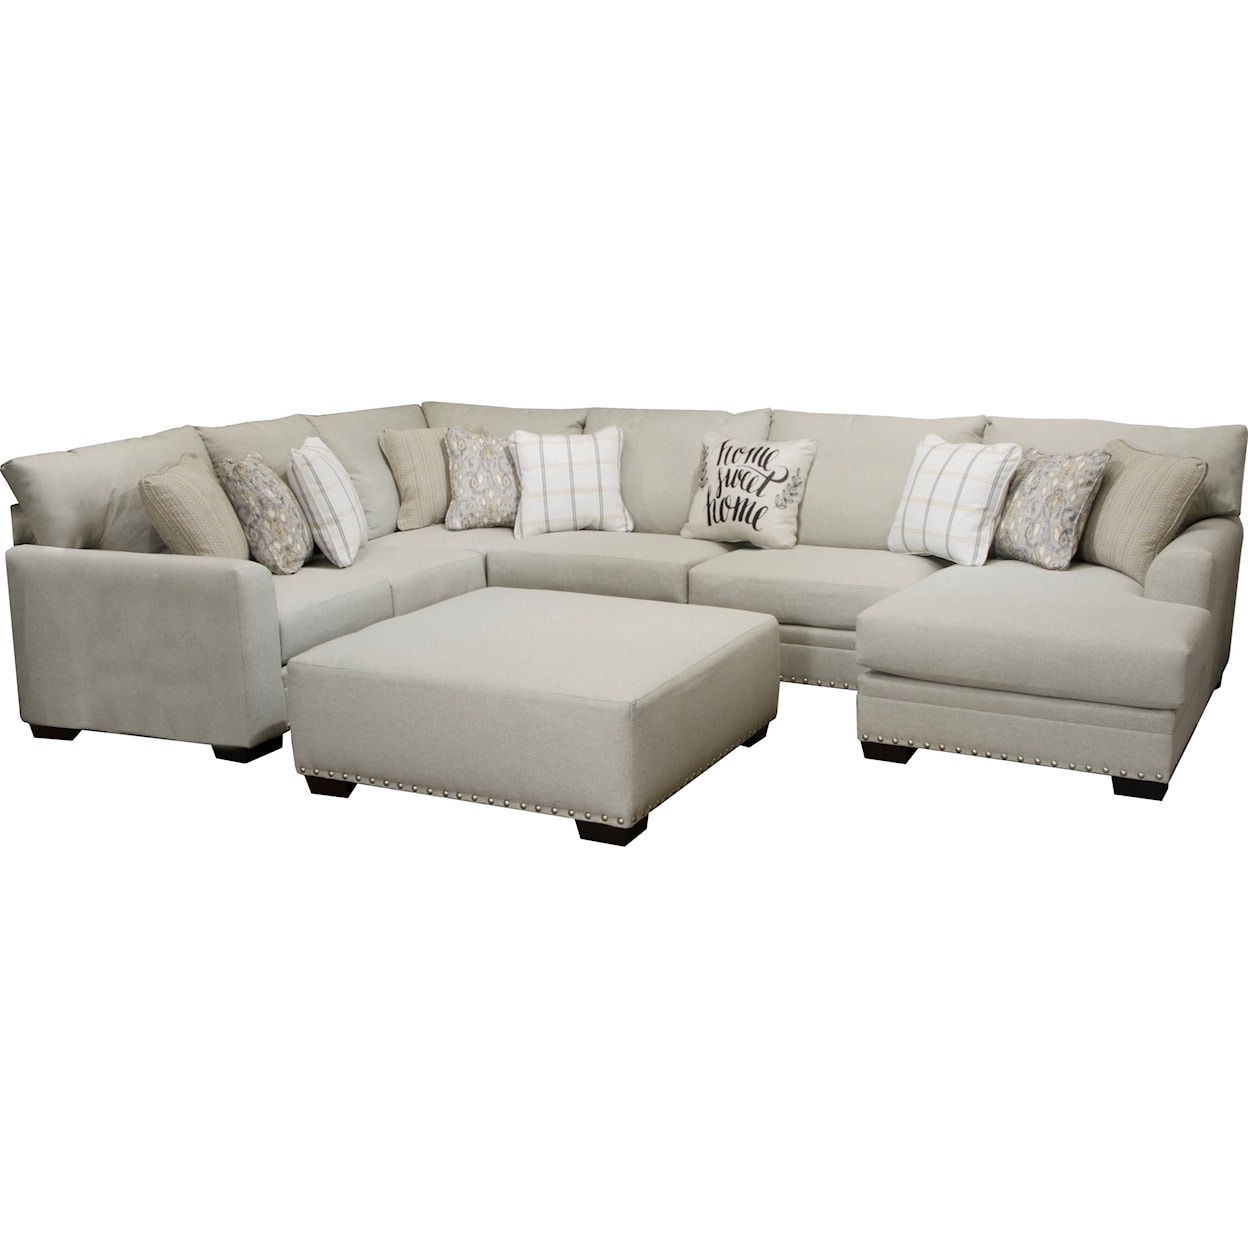 Jackson Furniture 4478 Middleton U-Shaped Sectional